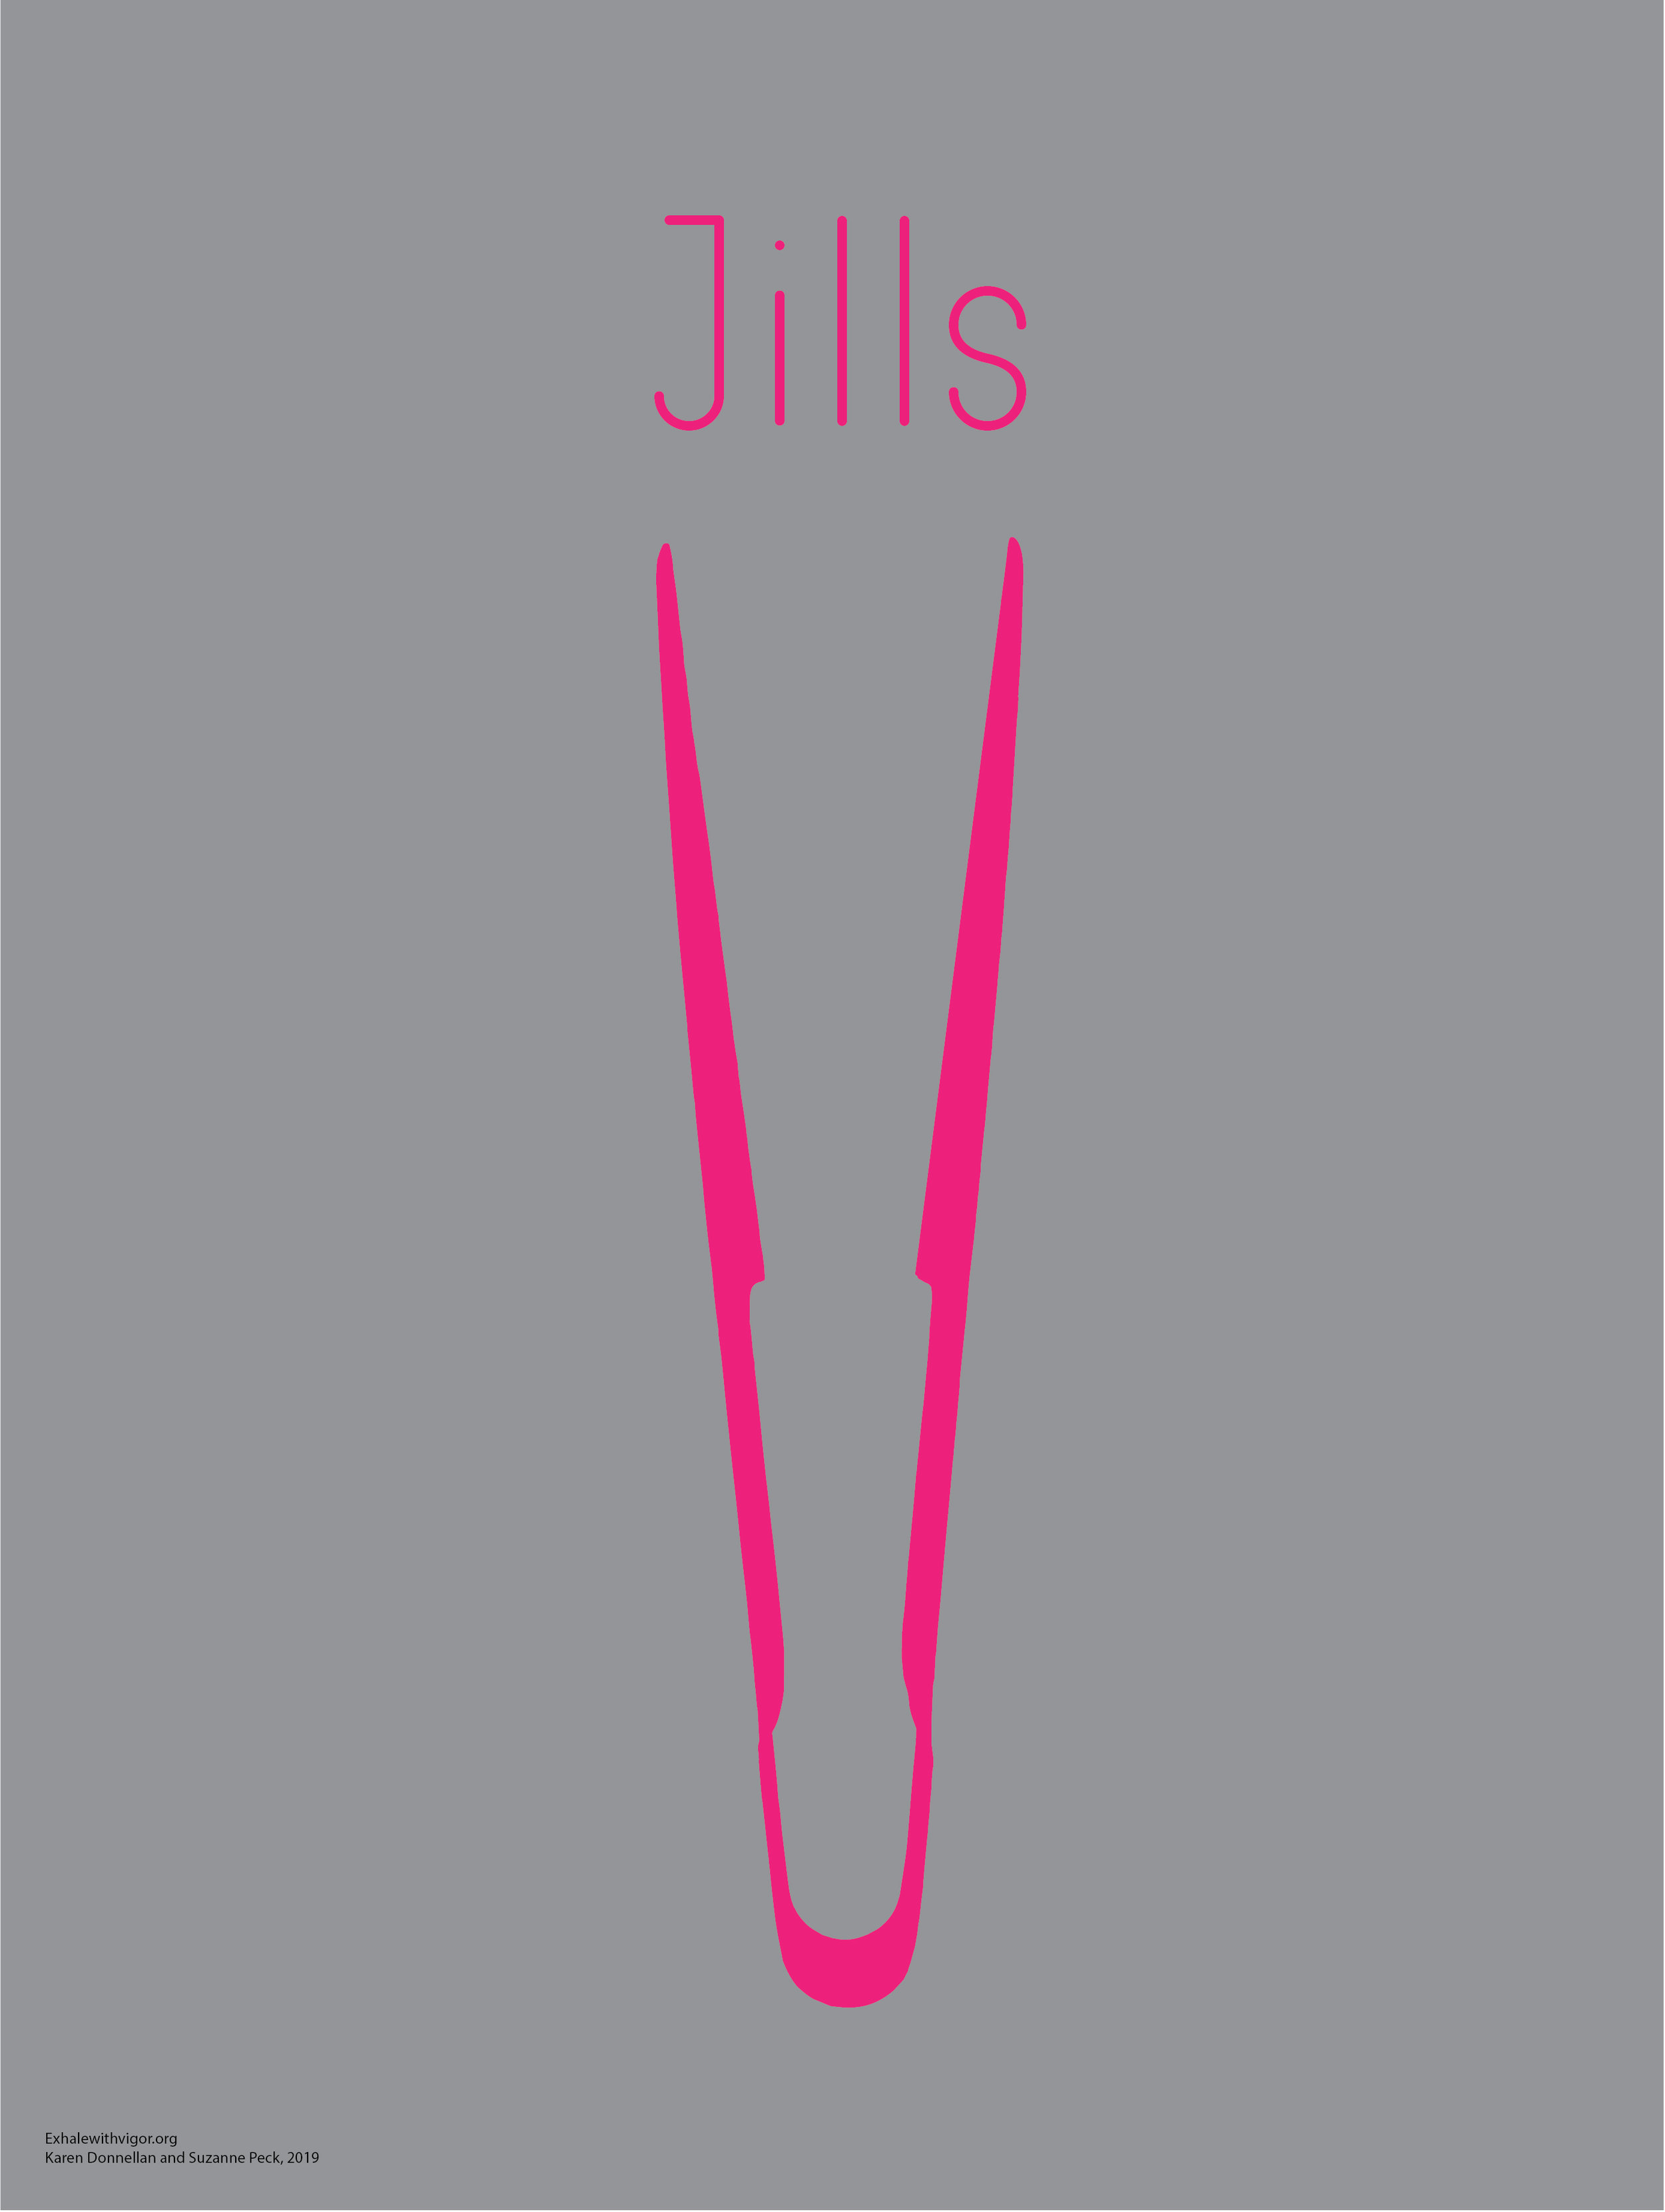  Jills poster, 2017 